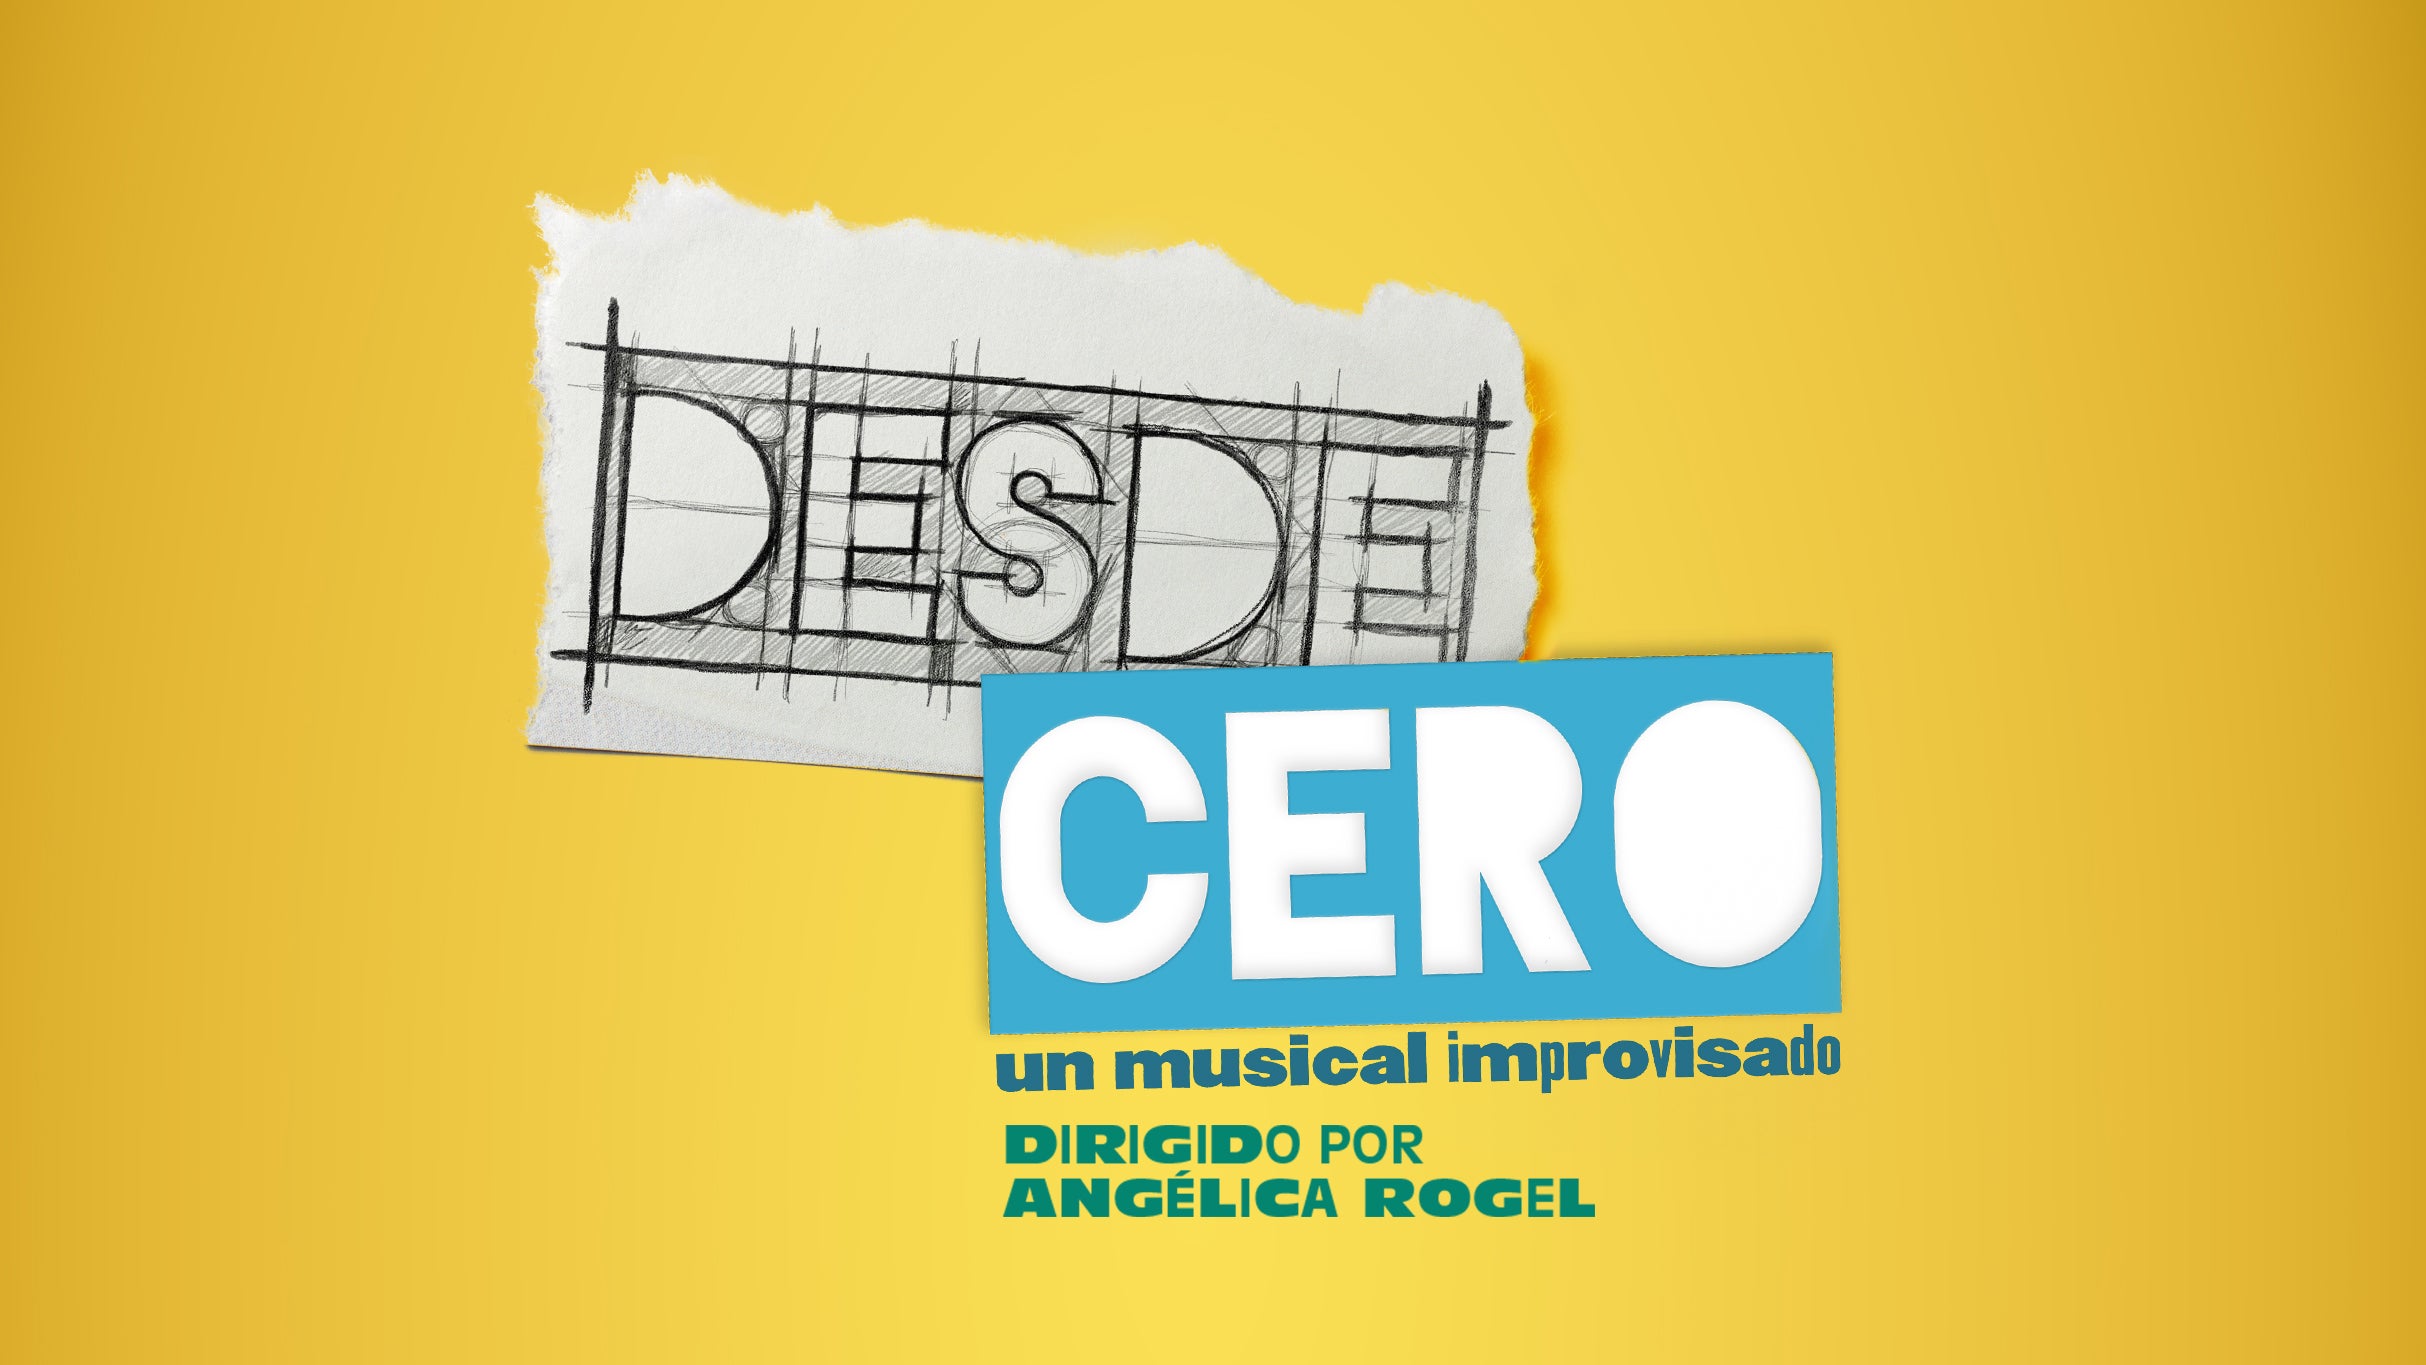 Desde Cero: Un musical improvisado presale information on freepresalepasswords.com